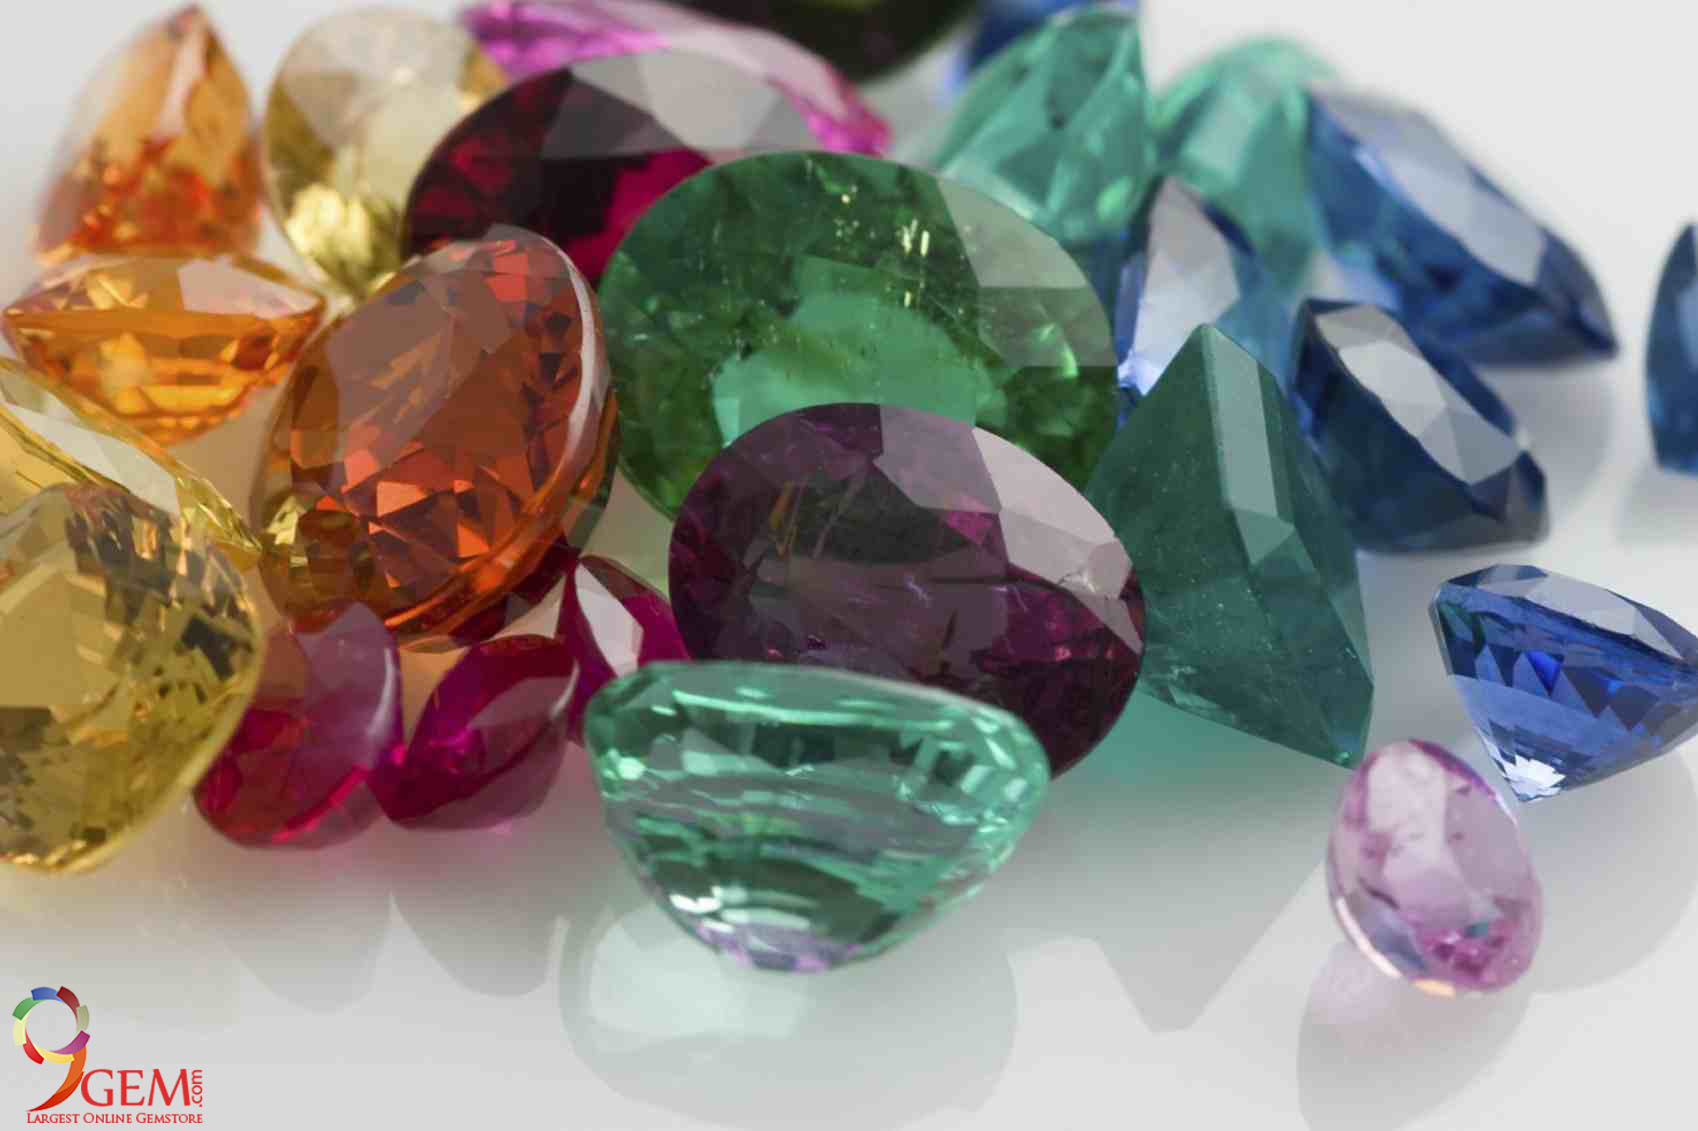 Certified Gemstone Exporters UAE, Natural Gemstone Suppliers UAE-9Gem